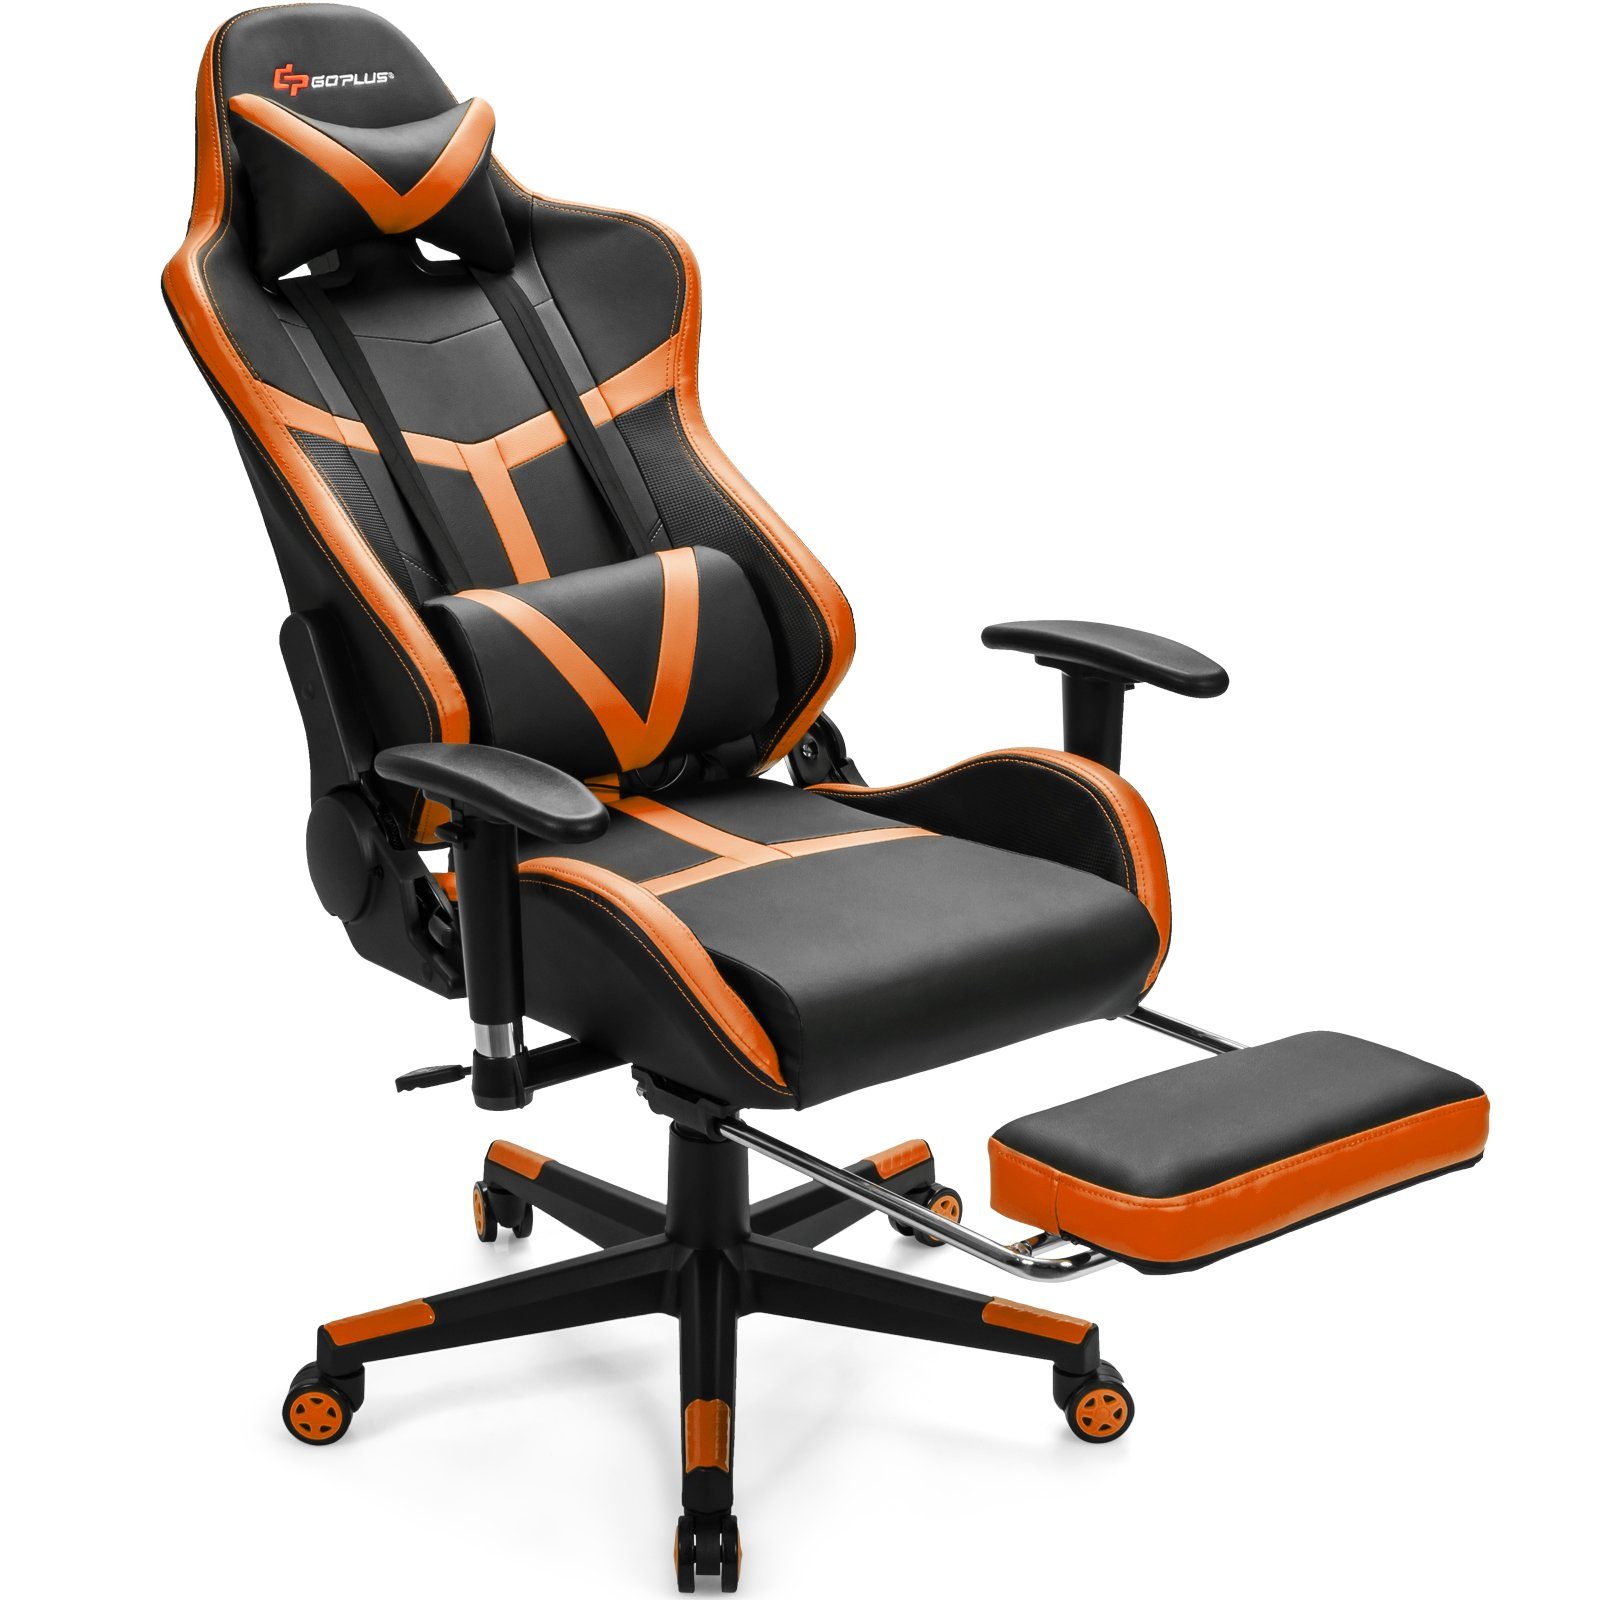 AUFUN Gaming Stuhl, Bürostuhl Ergonomisch mit Vibration Massage